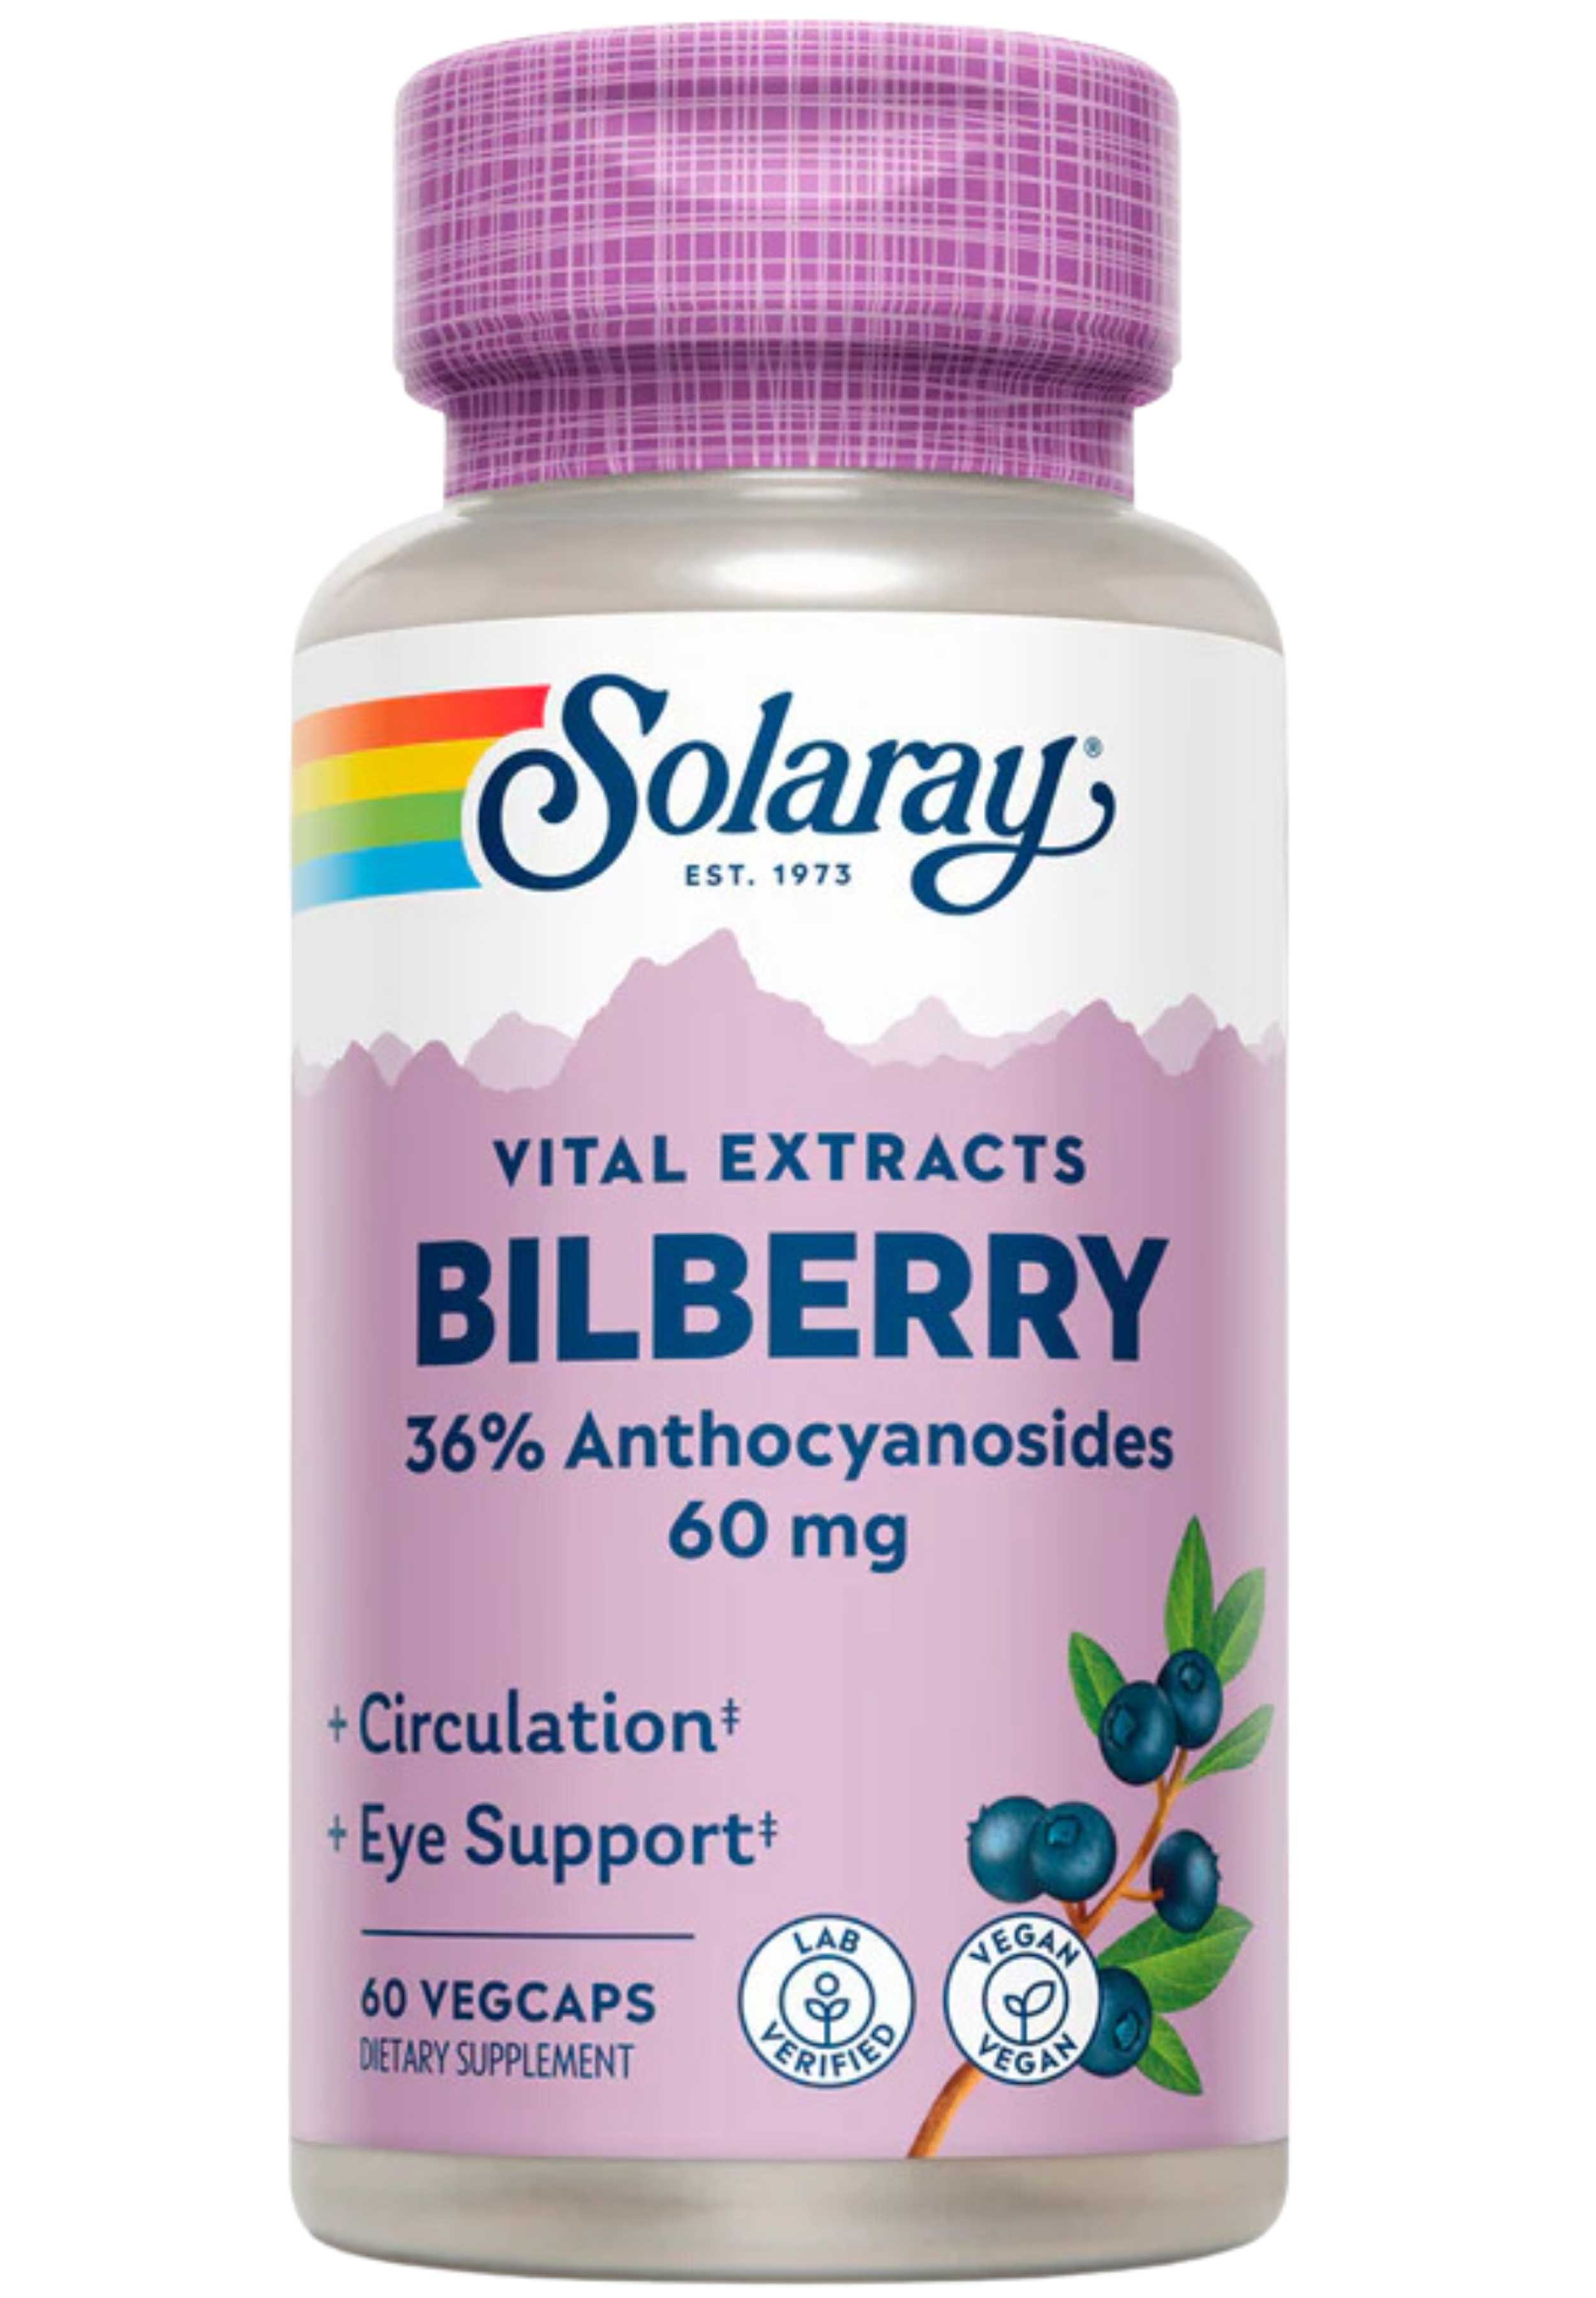 Solaray Vital Extracts Bilberry